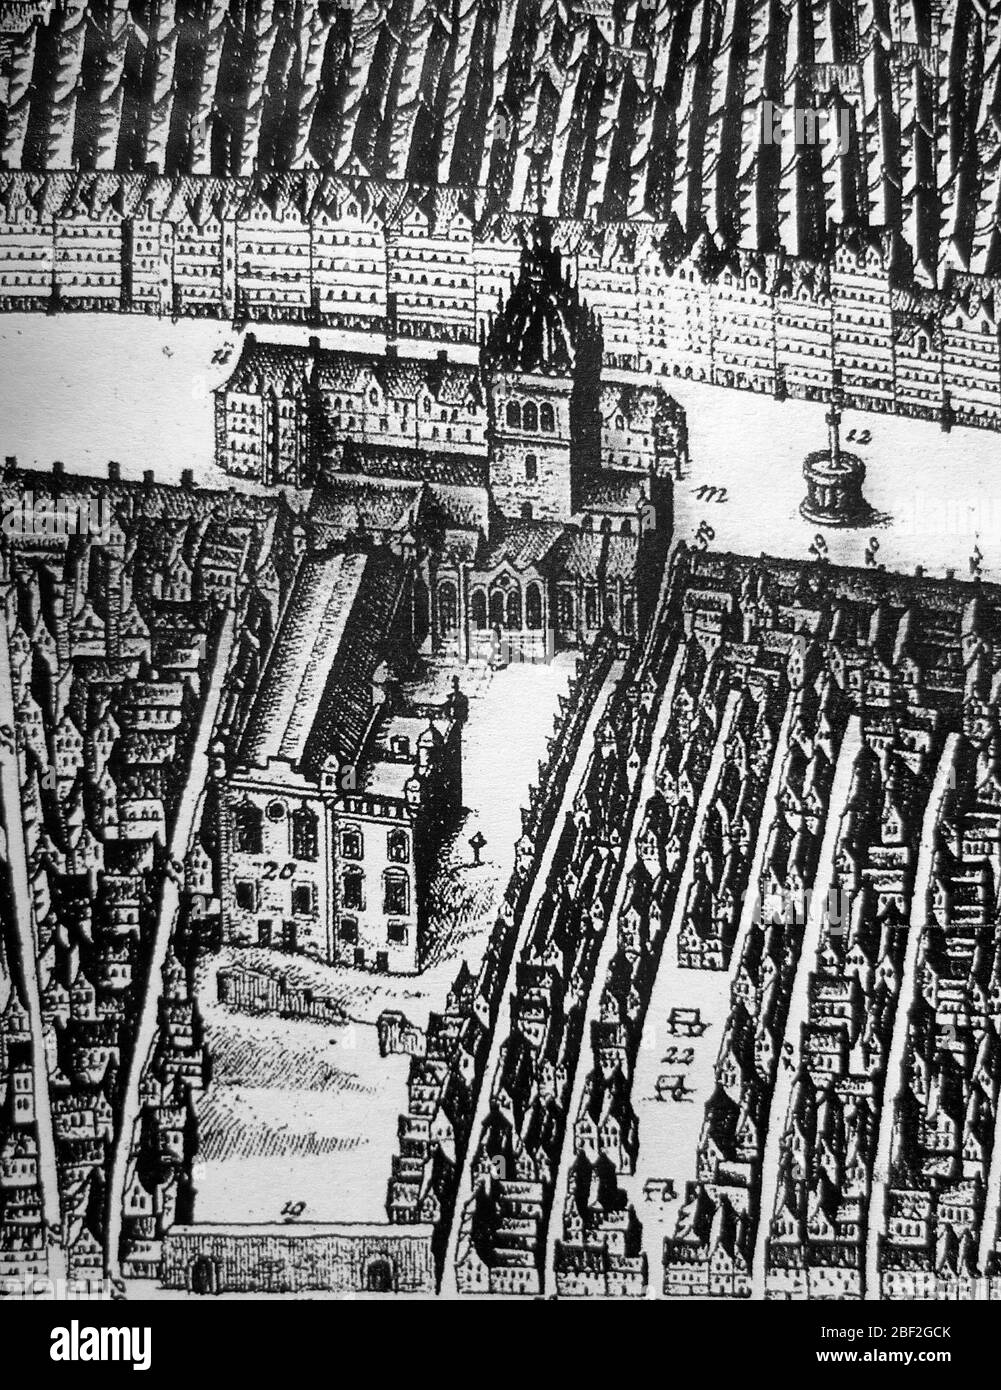 St. Giles Kirk e Parlamento dalla mappa di Edimburgo di James Gordon di Rothiemay 1647. L'edificio oltre St. Giles è la fila di negozi a vista chiamati Luckenboots. Il casello della città occupava l'estremità sinistra della fila. Foto Stock